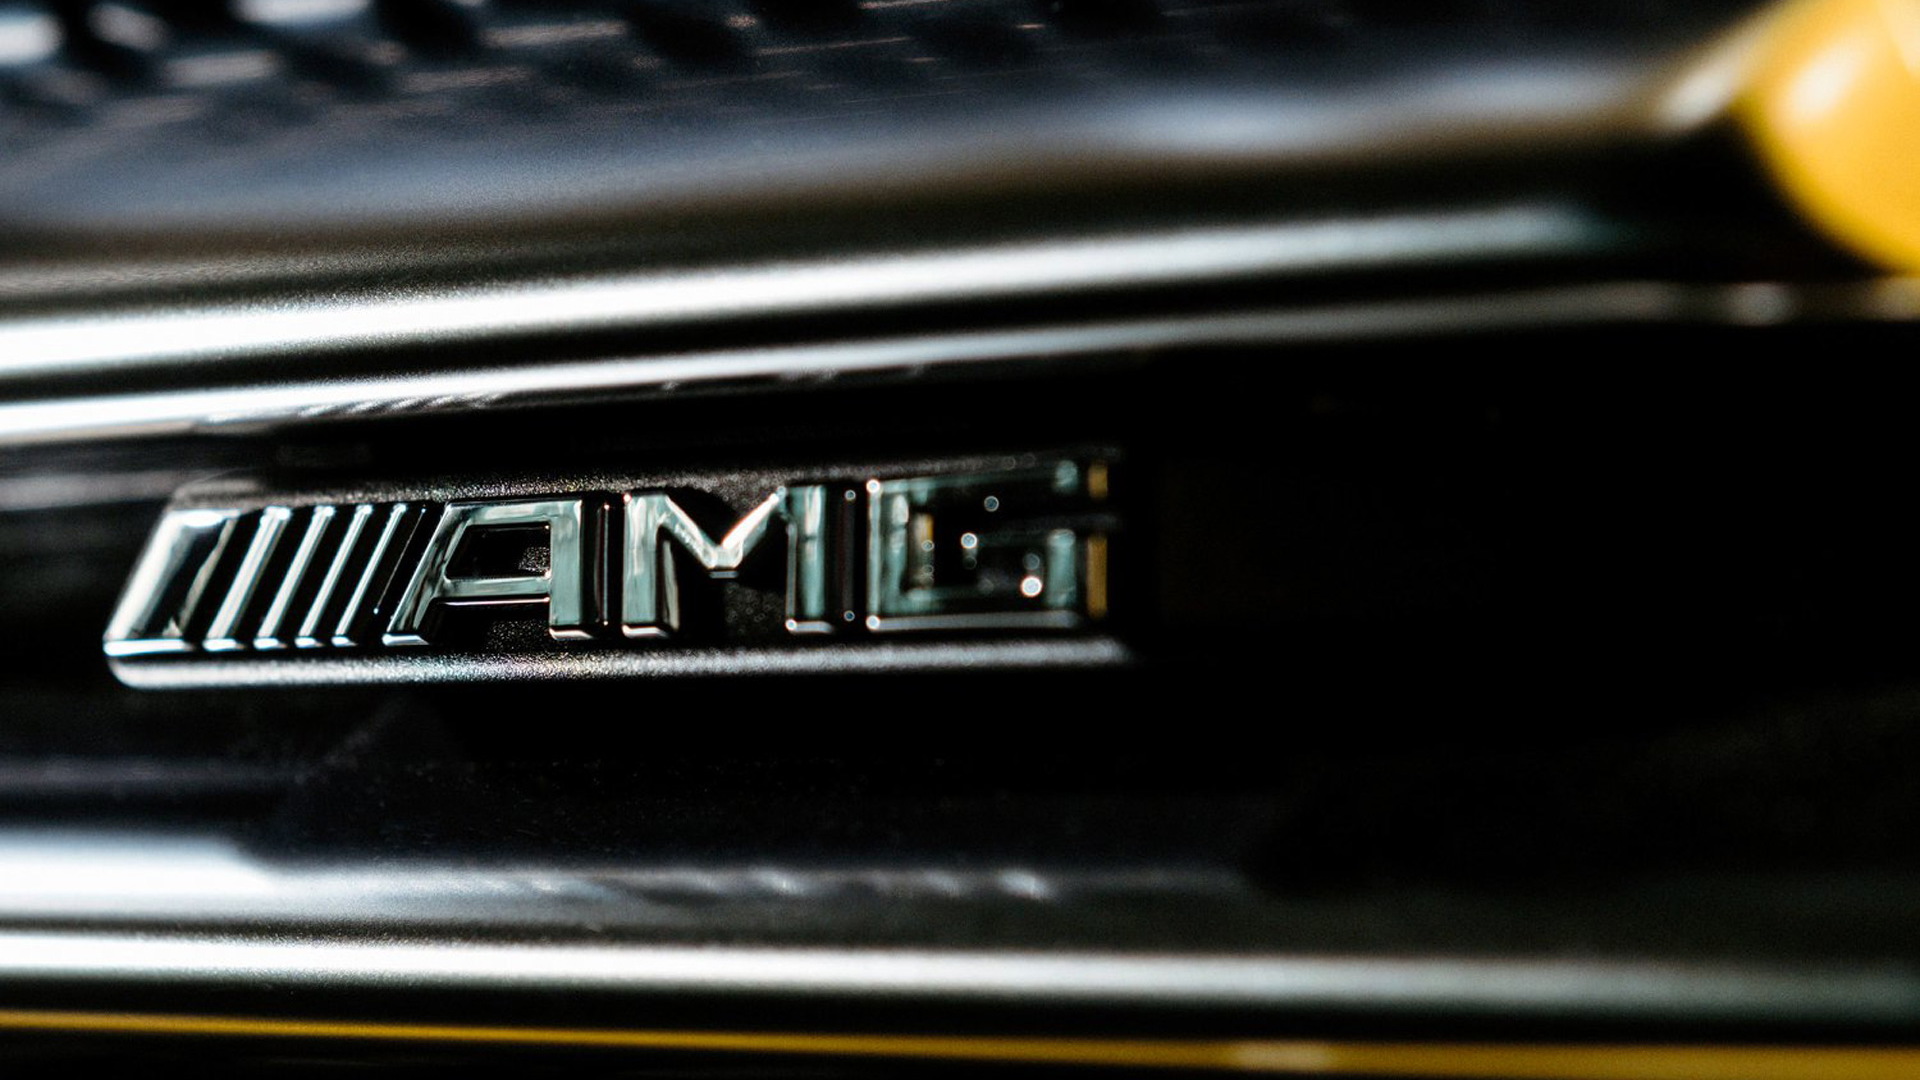 Teaser for 2019 Mercedes-AMG A35 hatchback